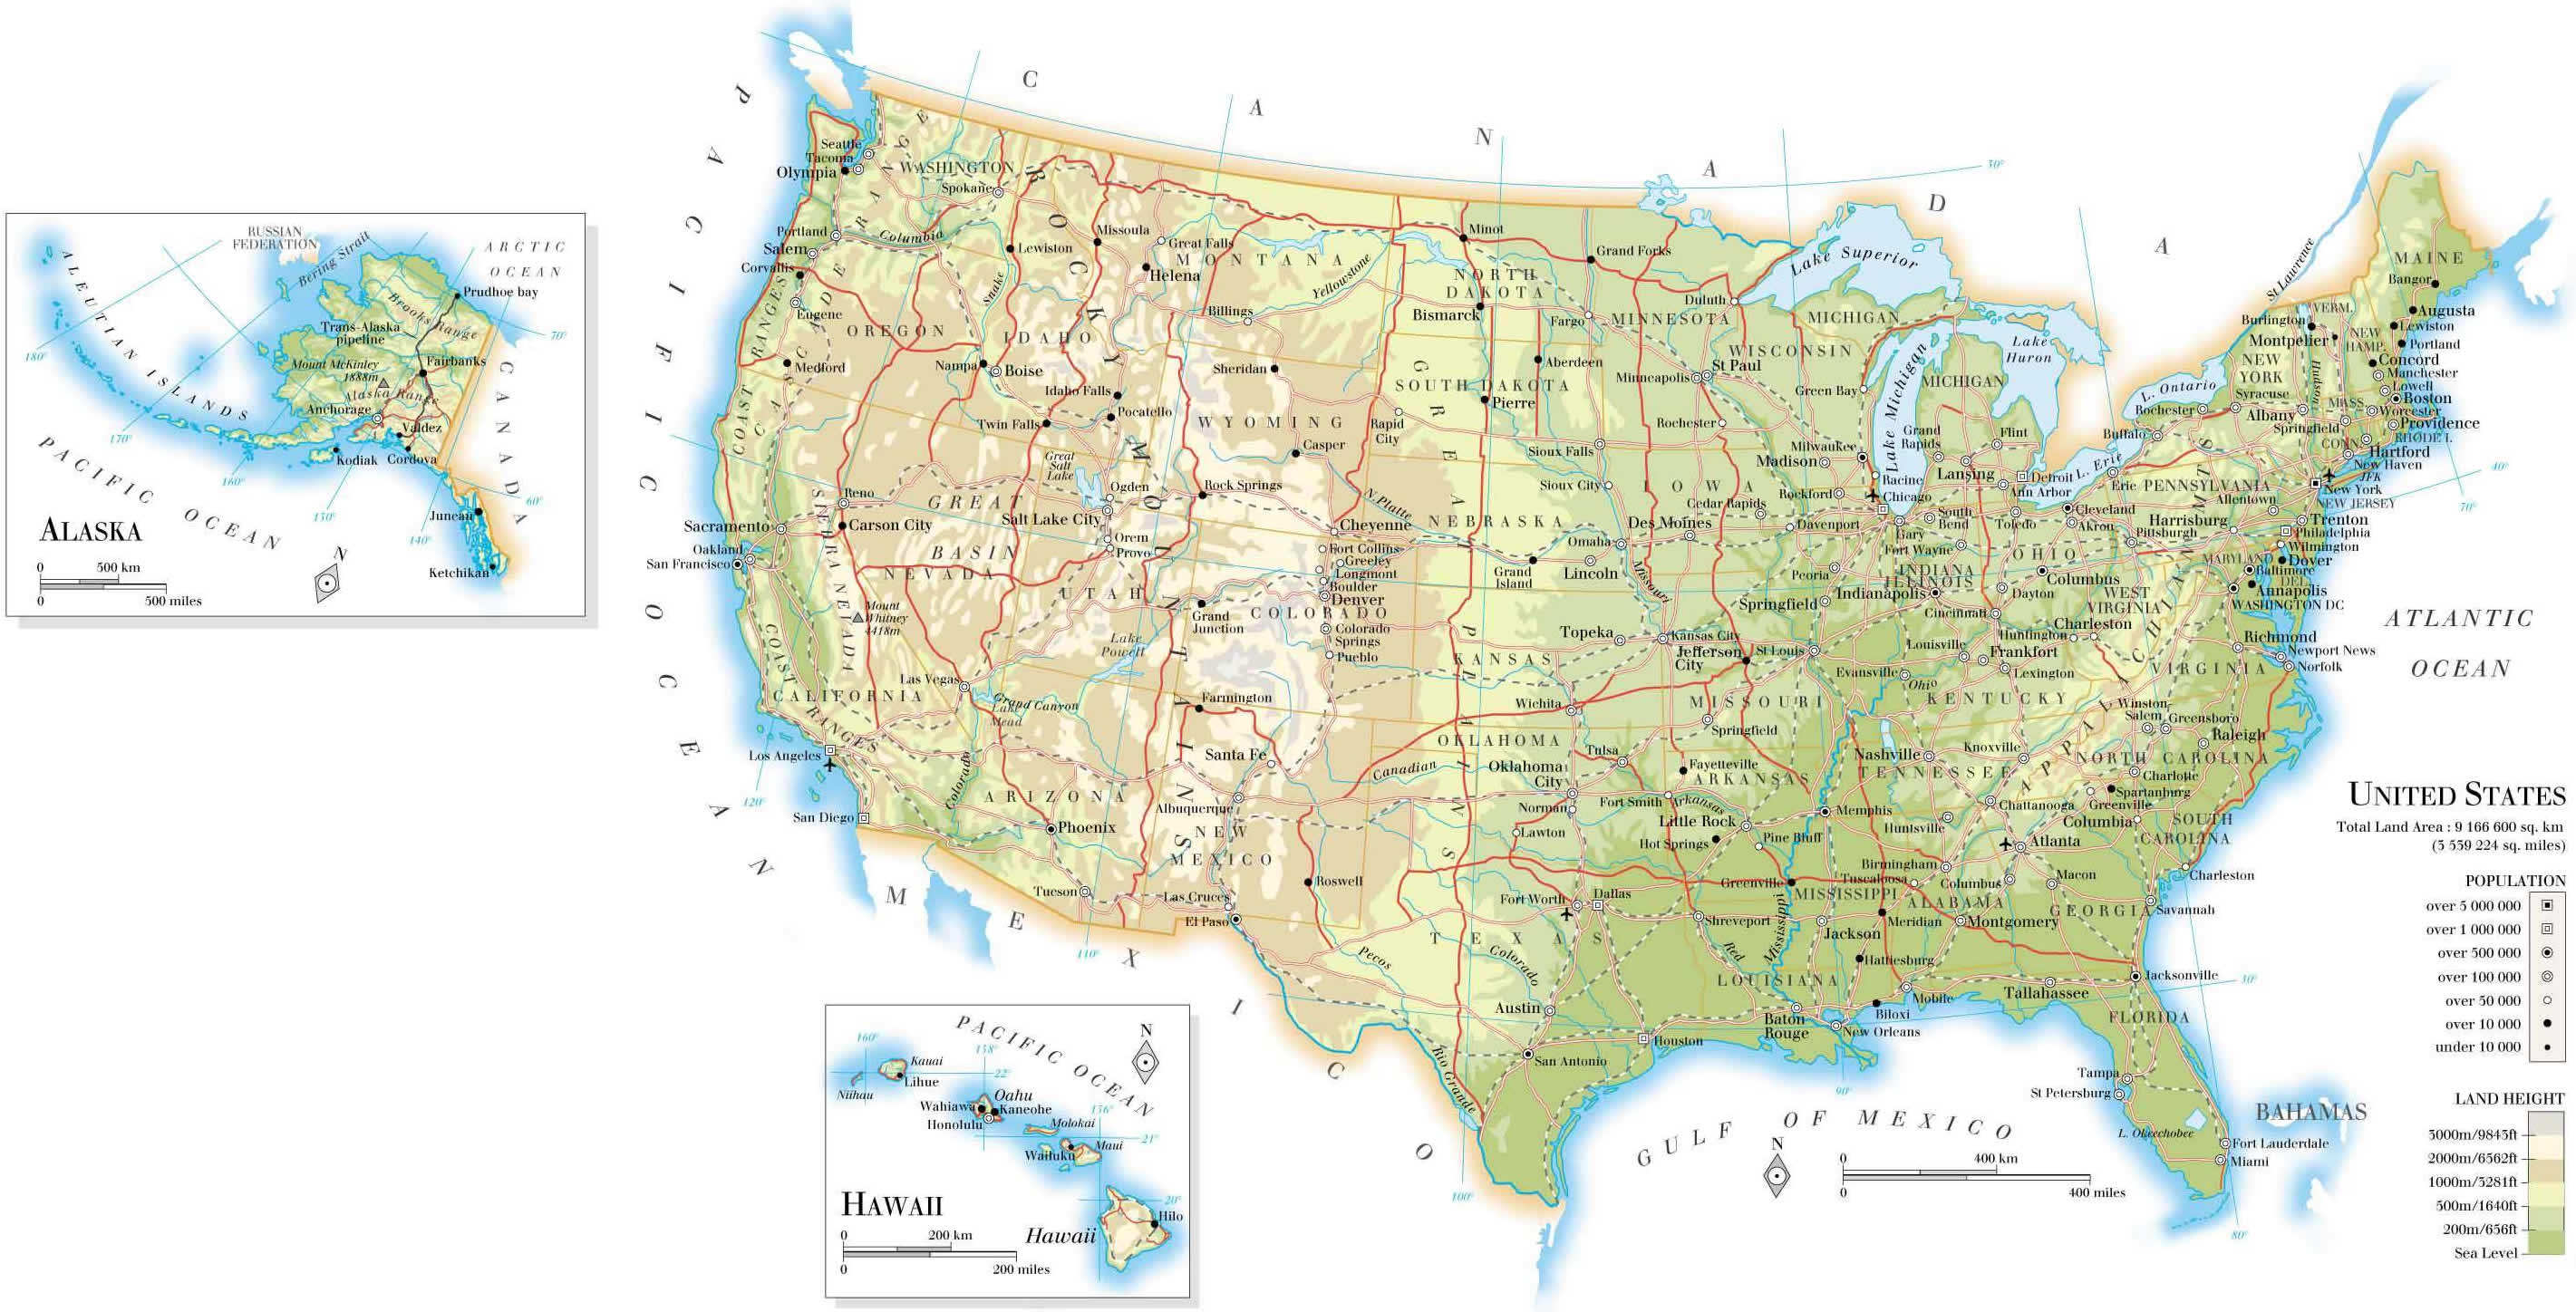 Vereinigte Staaten bevolkerung land height karte